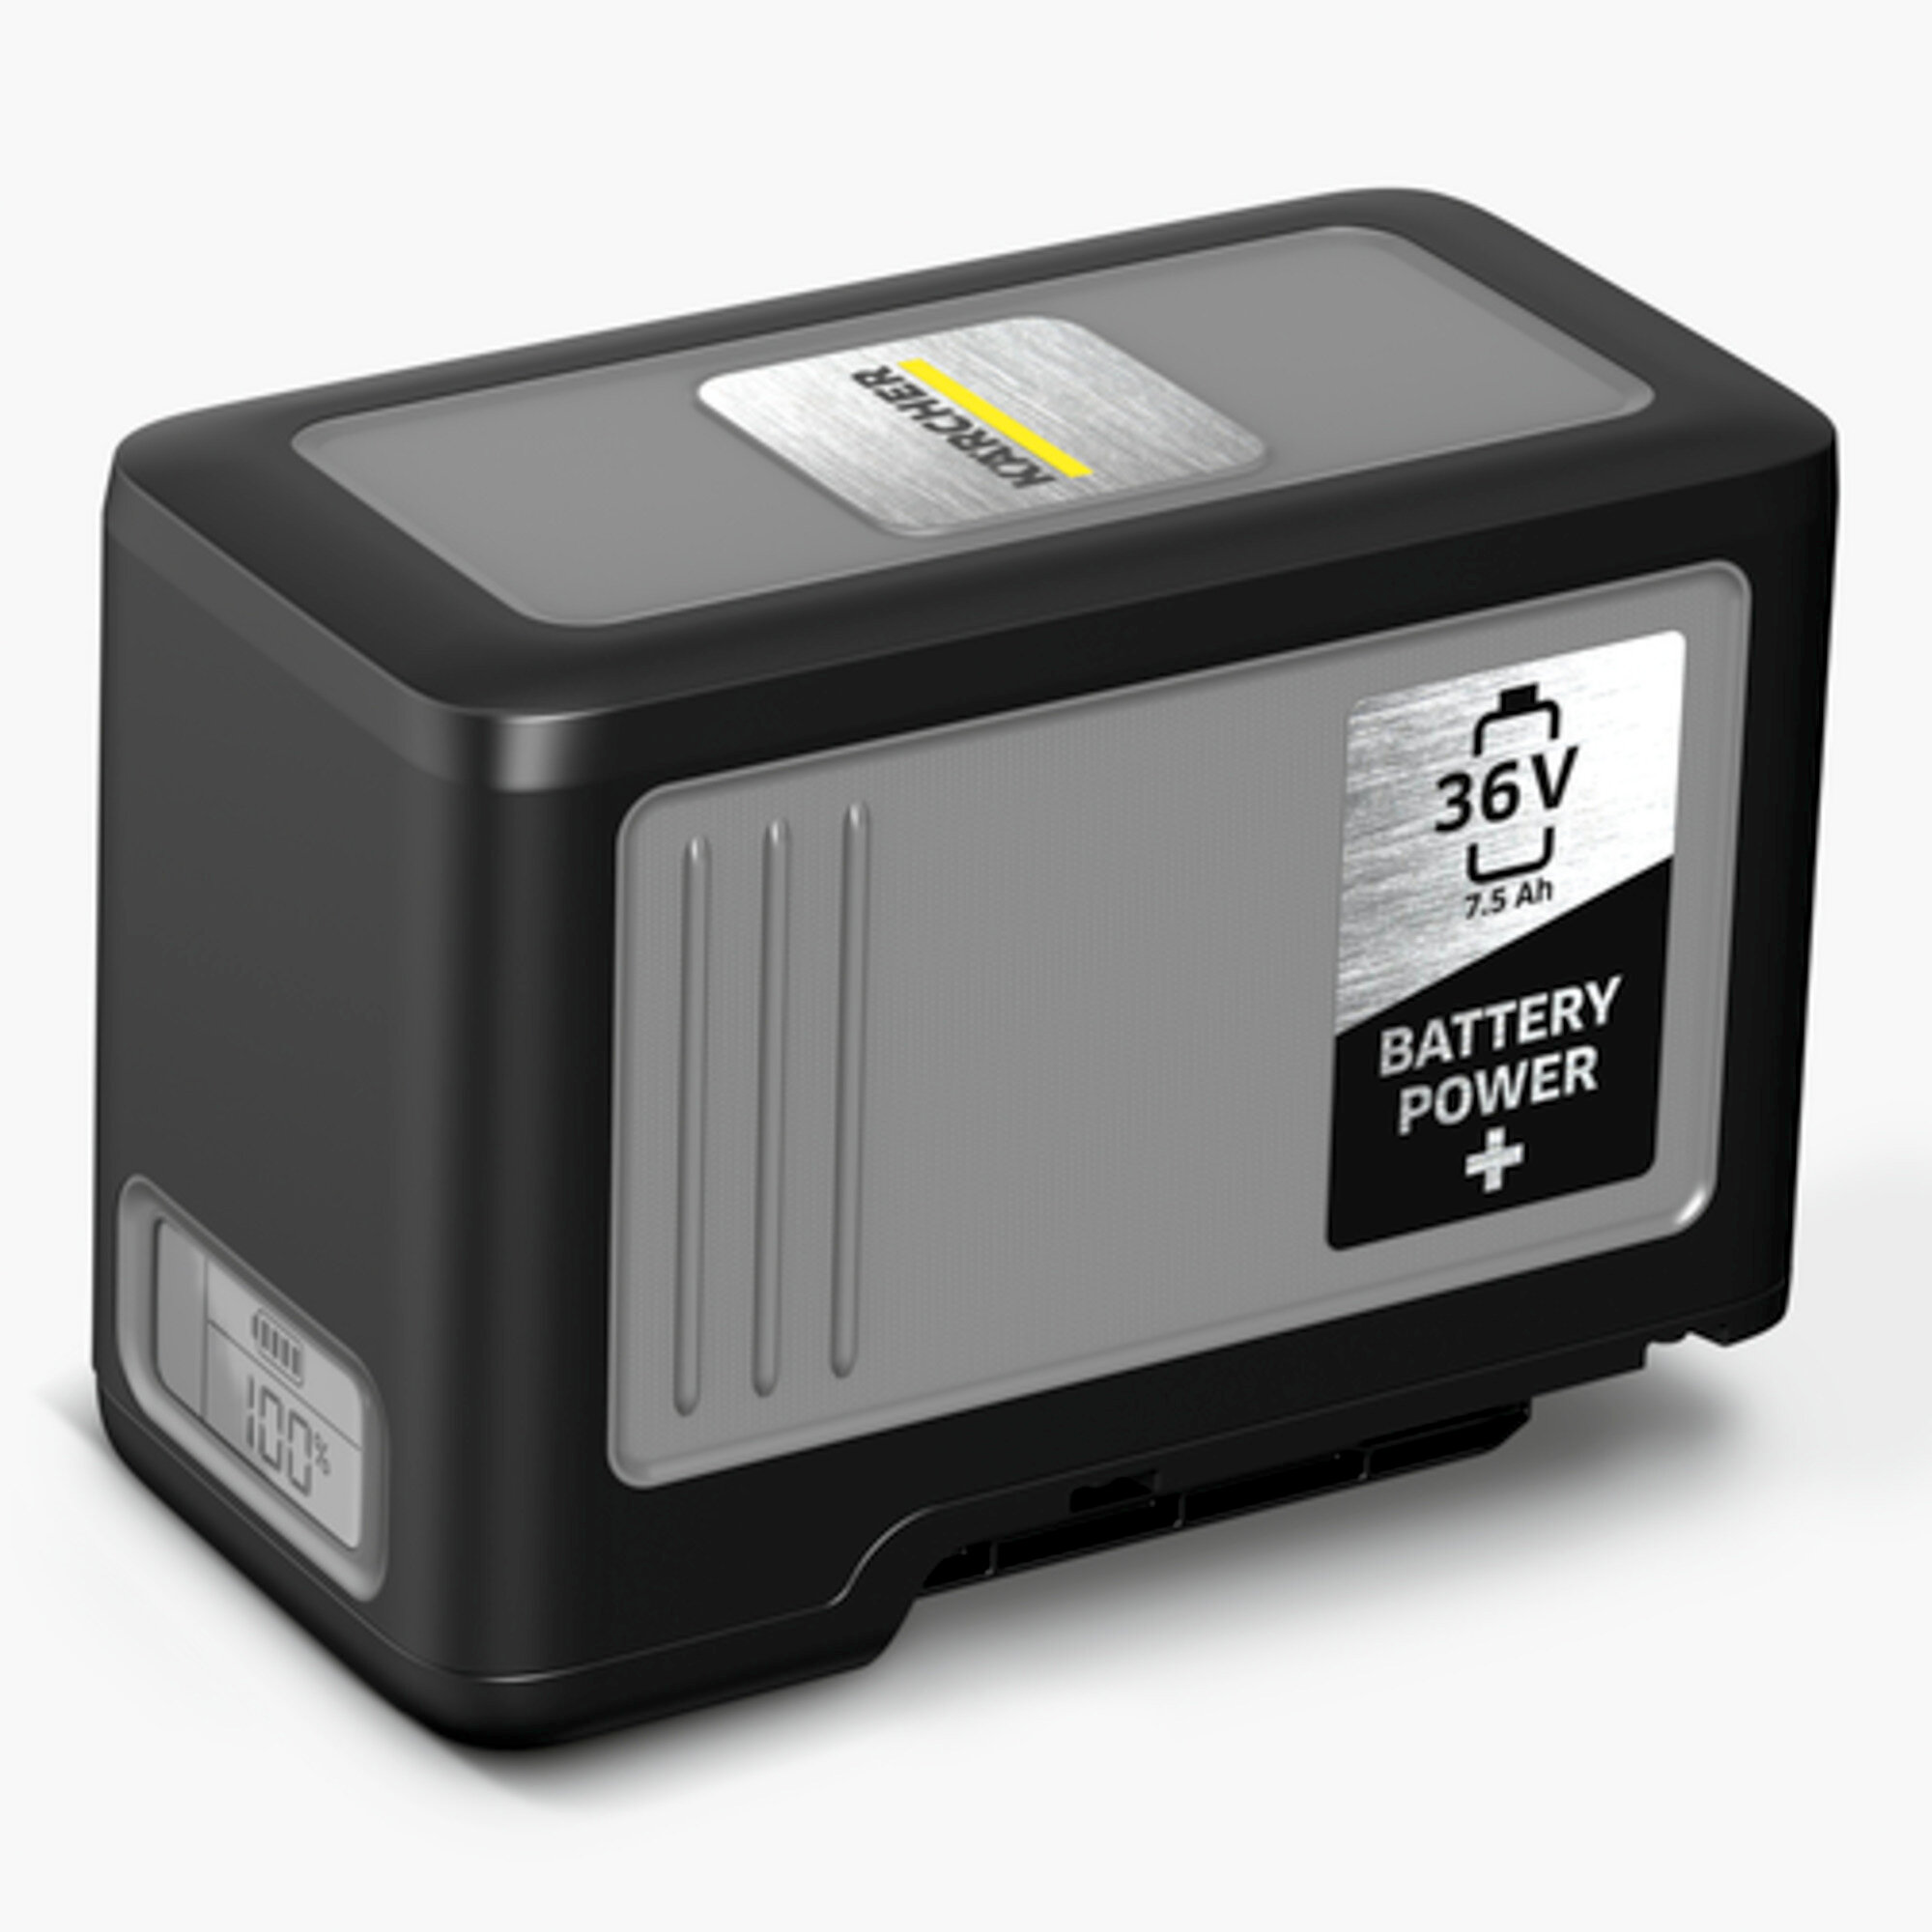 Nedves-száraz porszívó NT 22/1 Ap Bp Pack: Erőteljes Battery Power+ 36 V akkumulátor 7.5 Ah kapacitással